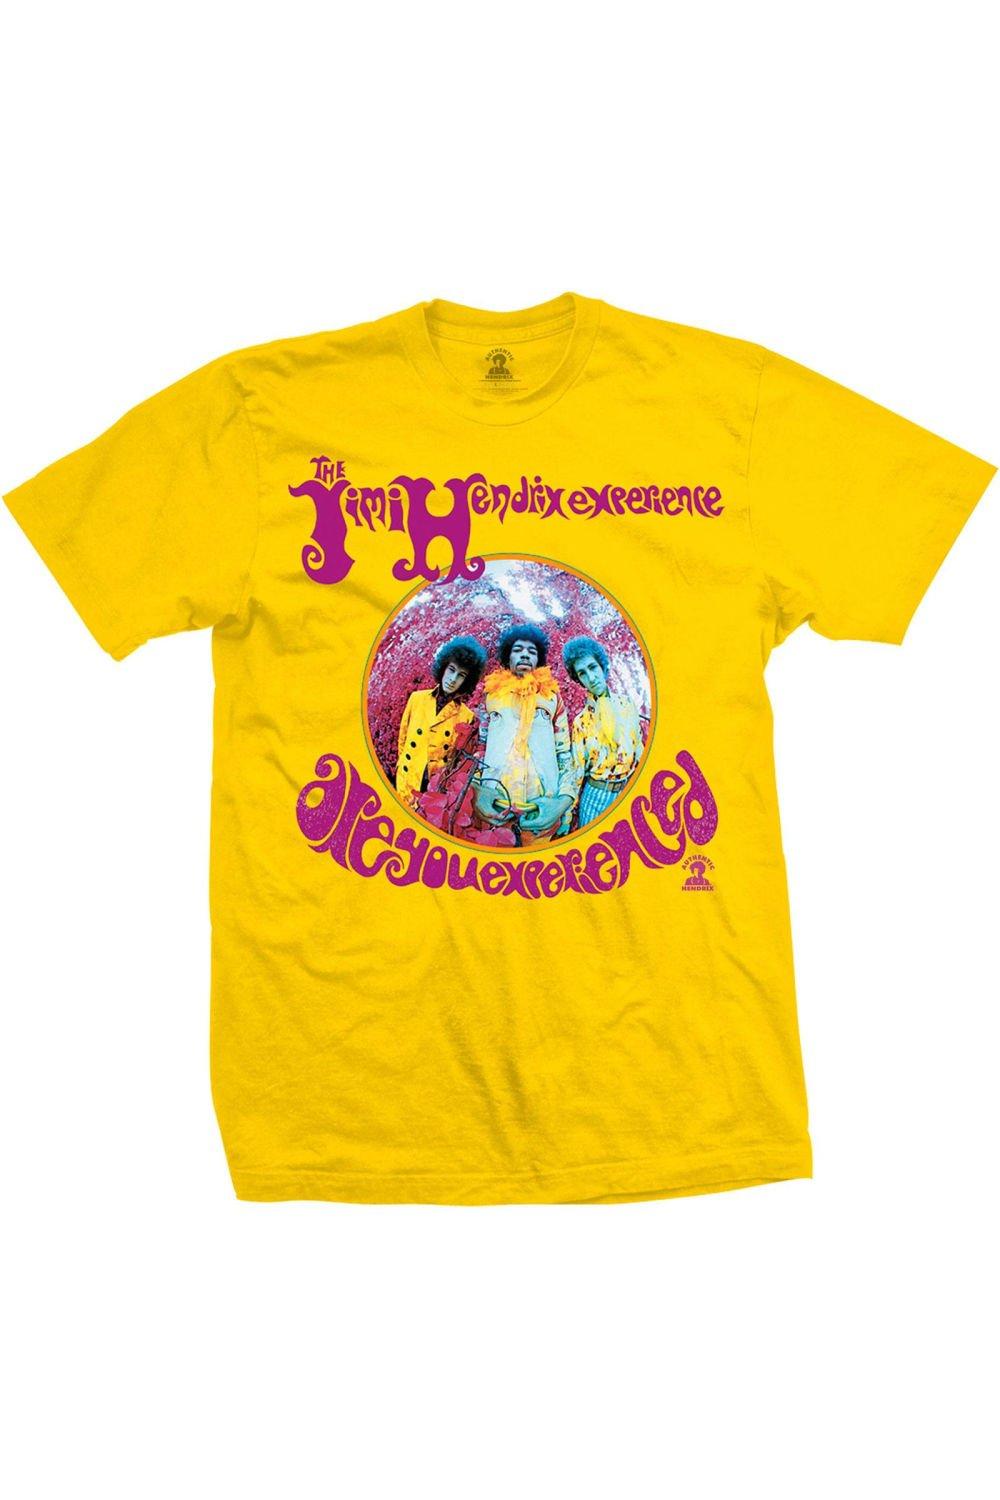 футболка вы опытный jimi hendrix черный Футболка «Вы опытный» Jimi Hendrix, желтый